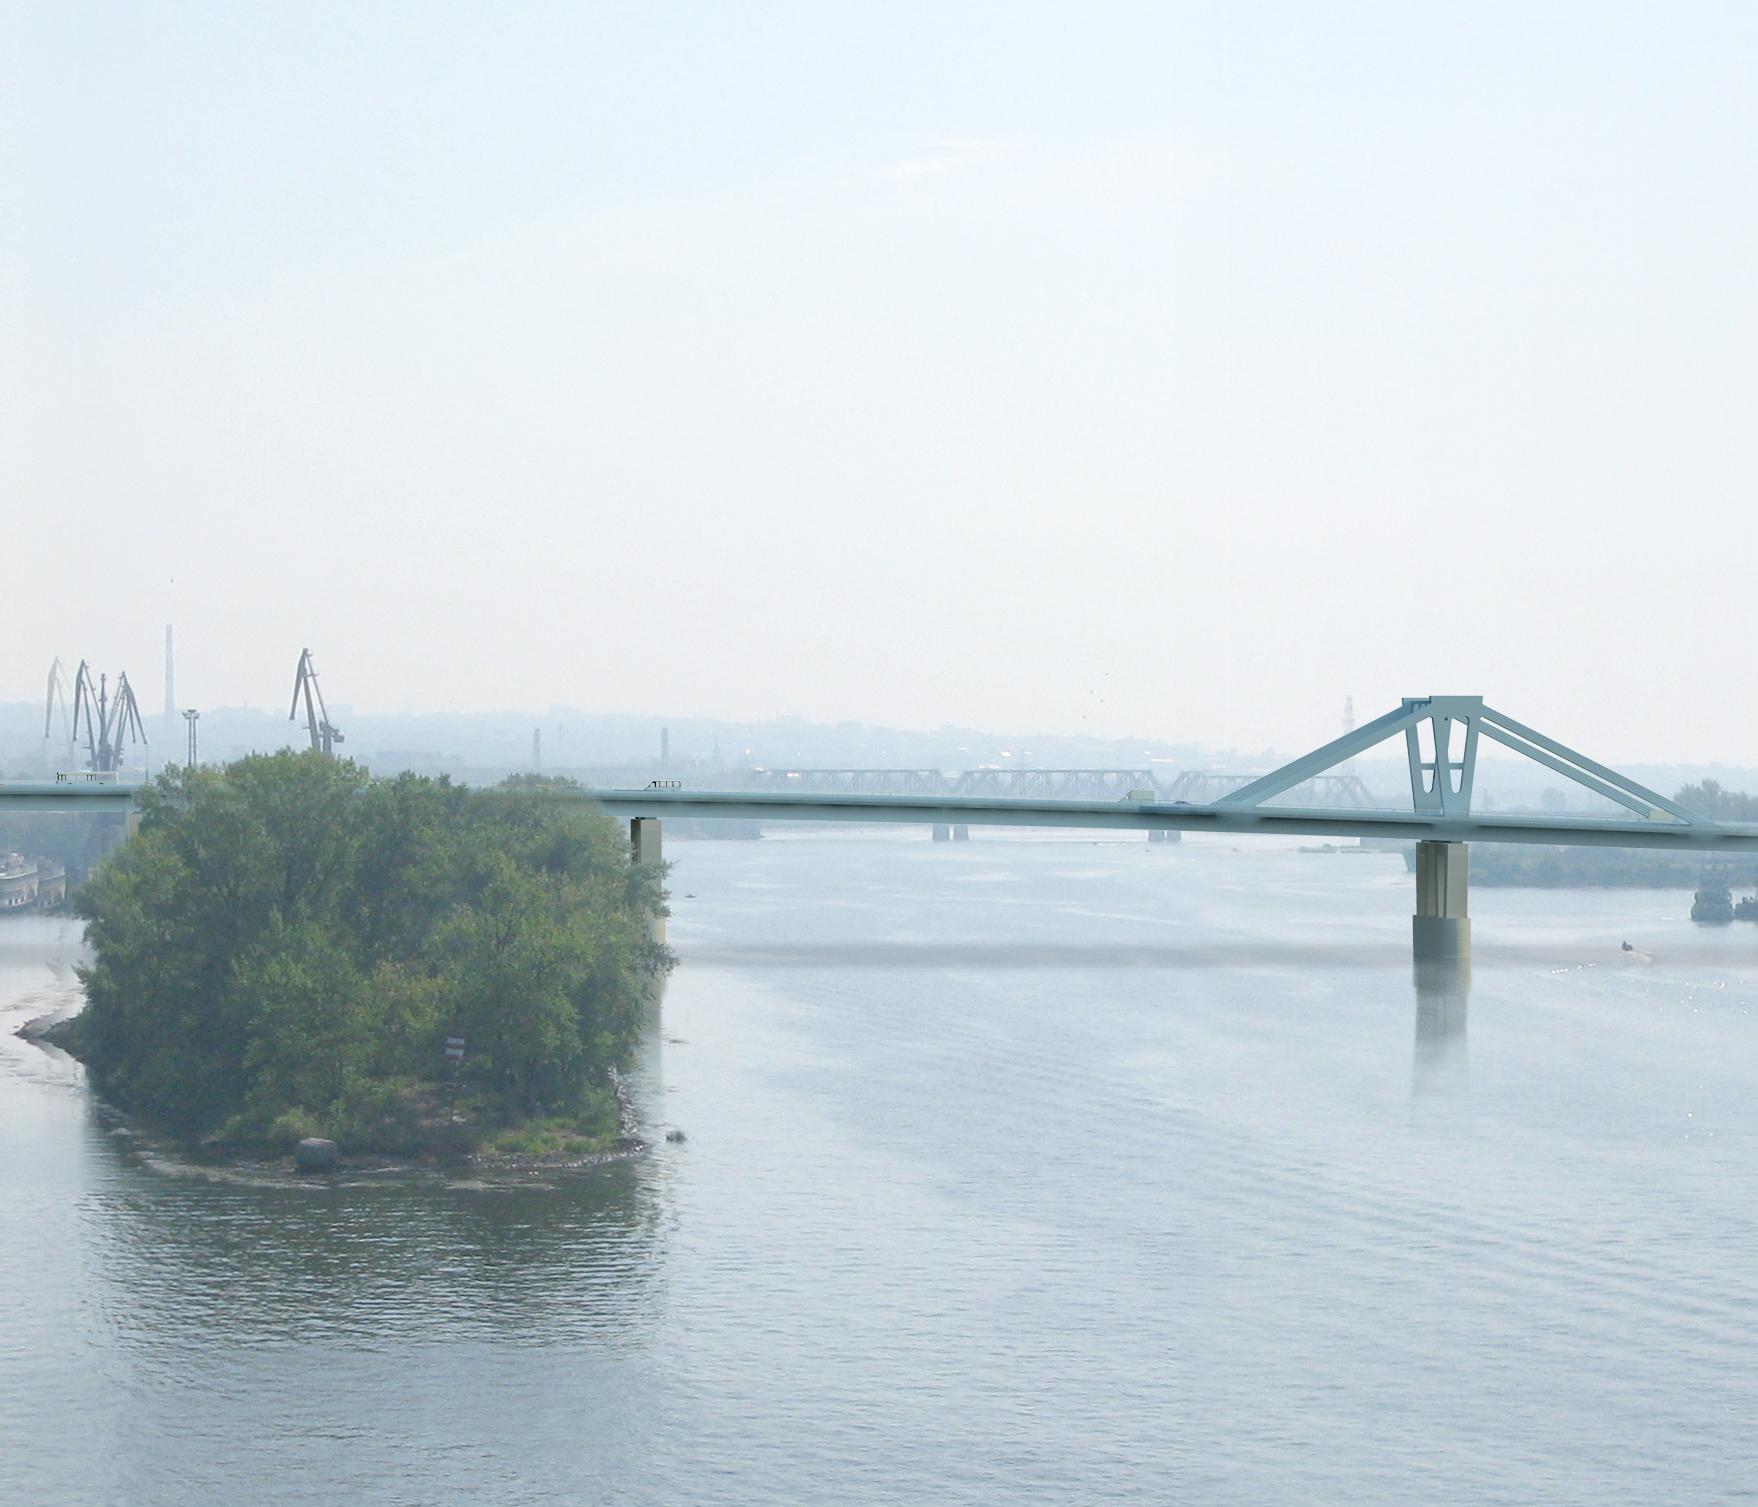 Самара. Мост через р. Самару. Визуализация